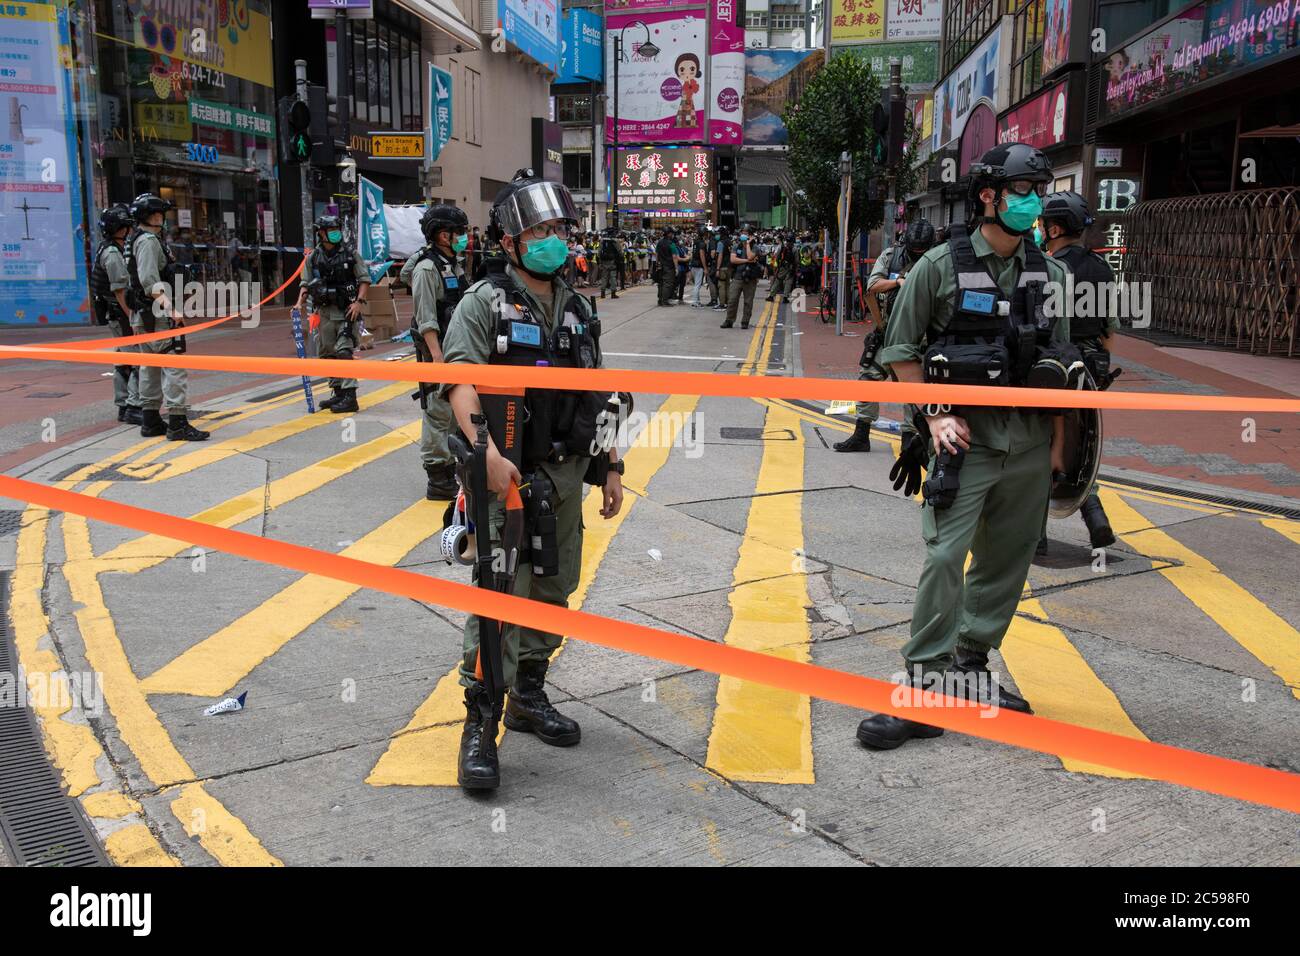 HONG KONG, Hong KONG RAE, CHINA: 1 DE JULIO de 2020.la policía se ocupa de la marcha de protesta ilegal con los cierres de calles en Causeway Bay.Hong Kong día de establecimiento de la Región Administrativa Especial. Veintitrés años después de que Gran Bretaña devolviese a Hong Kong al gobierno chino, Beijing está presionando para implementar nuevas leyes de seguridad nacional duras que suprimirán las protestas pro-democracia que se ven en la ciudad. Romperá la Declaración conjunta sino-británica, donde China aceptó el gobierno de un país, dos sistemas. La prohibición de las marchas tradicionales por primera vez ha enfurecido al público. Alamy en vivo Foto de stock